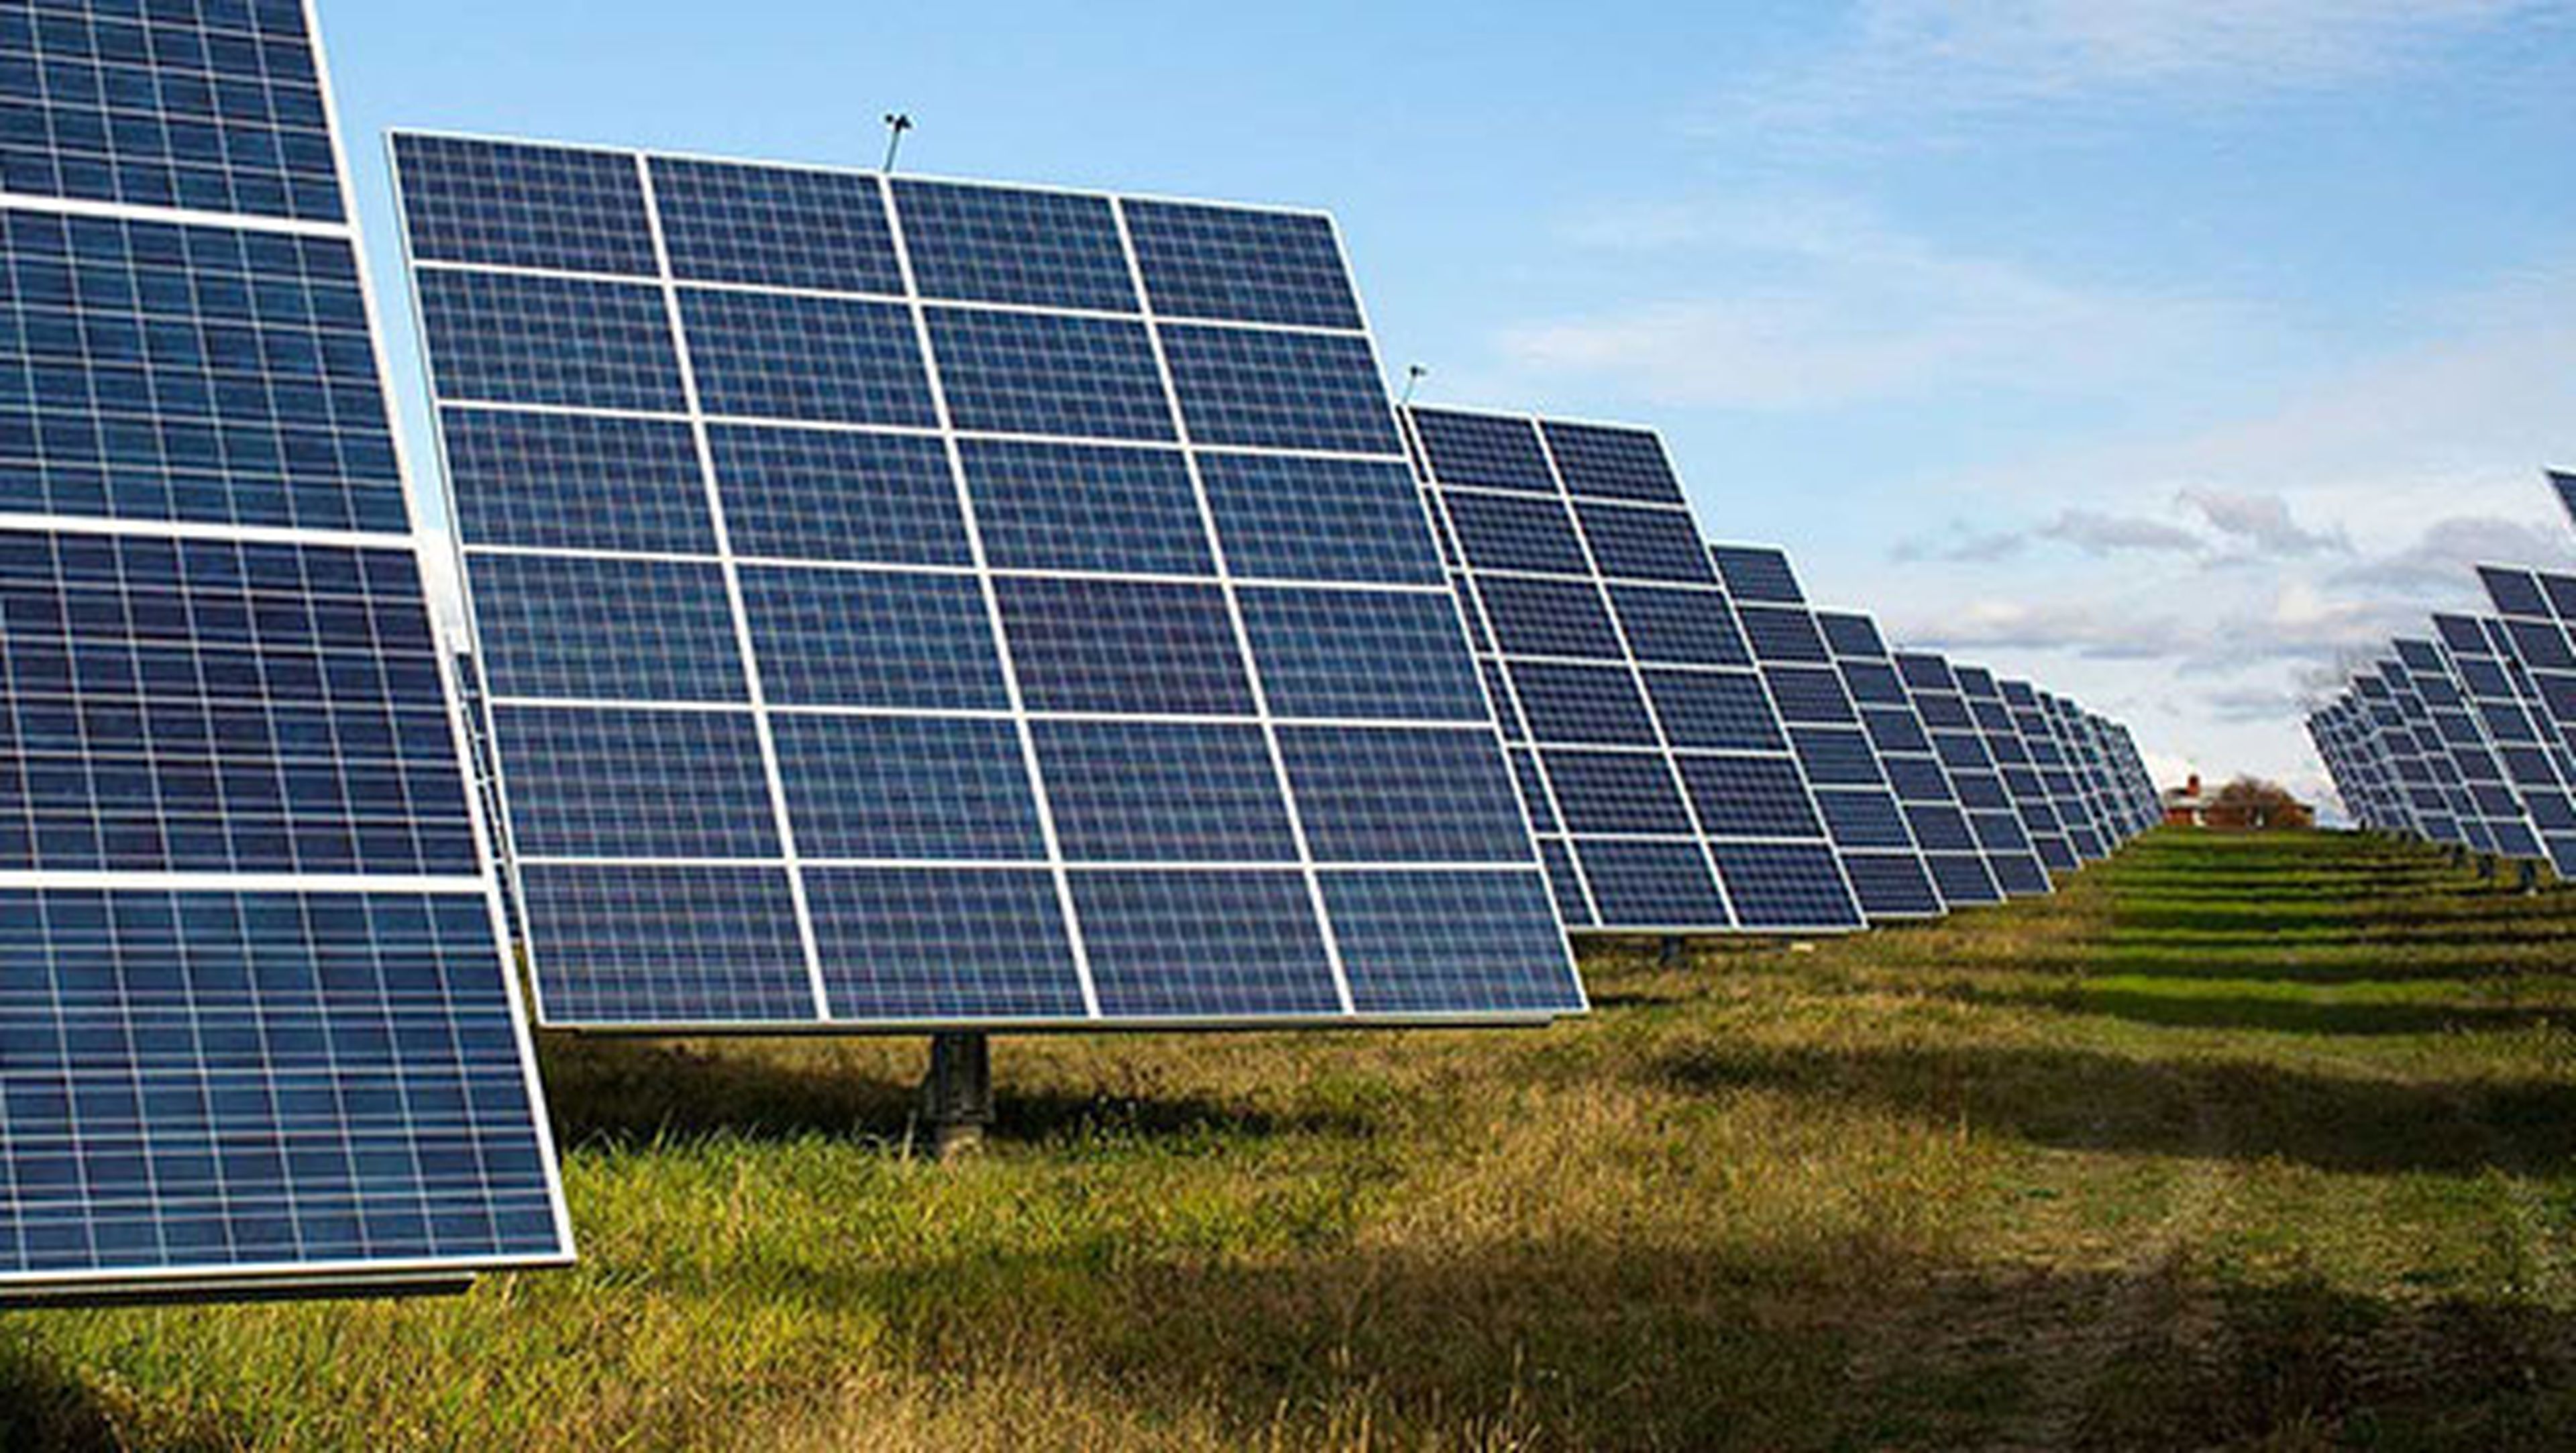 Encuentran vulnerabilidad en paneles solares que apagaría Europa